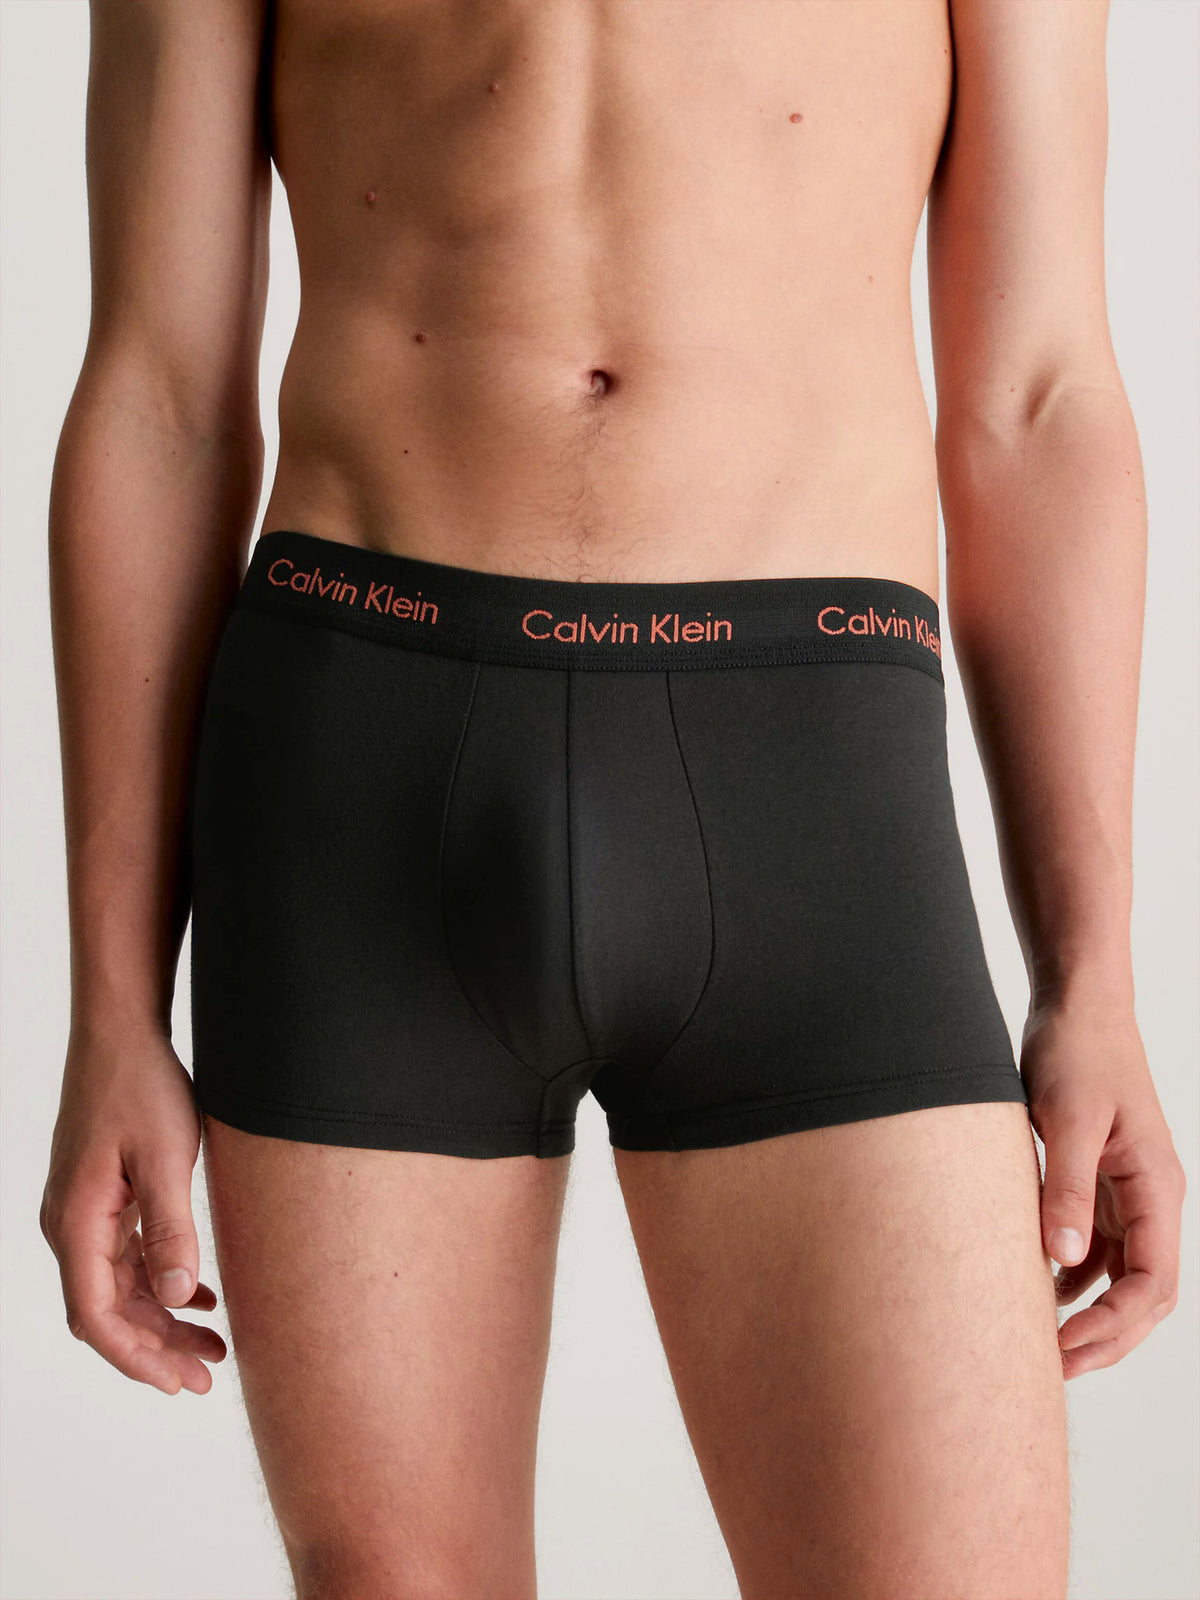 Mens Calvin Klein Boxer Shorts Low Rise Trunks 3 Pack, 02, U2664G, B- Eclyps, Mcca Orange, OLV Brnch LG